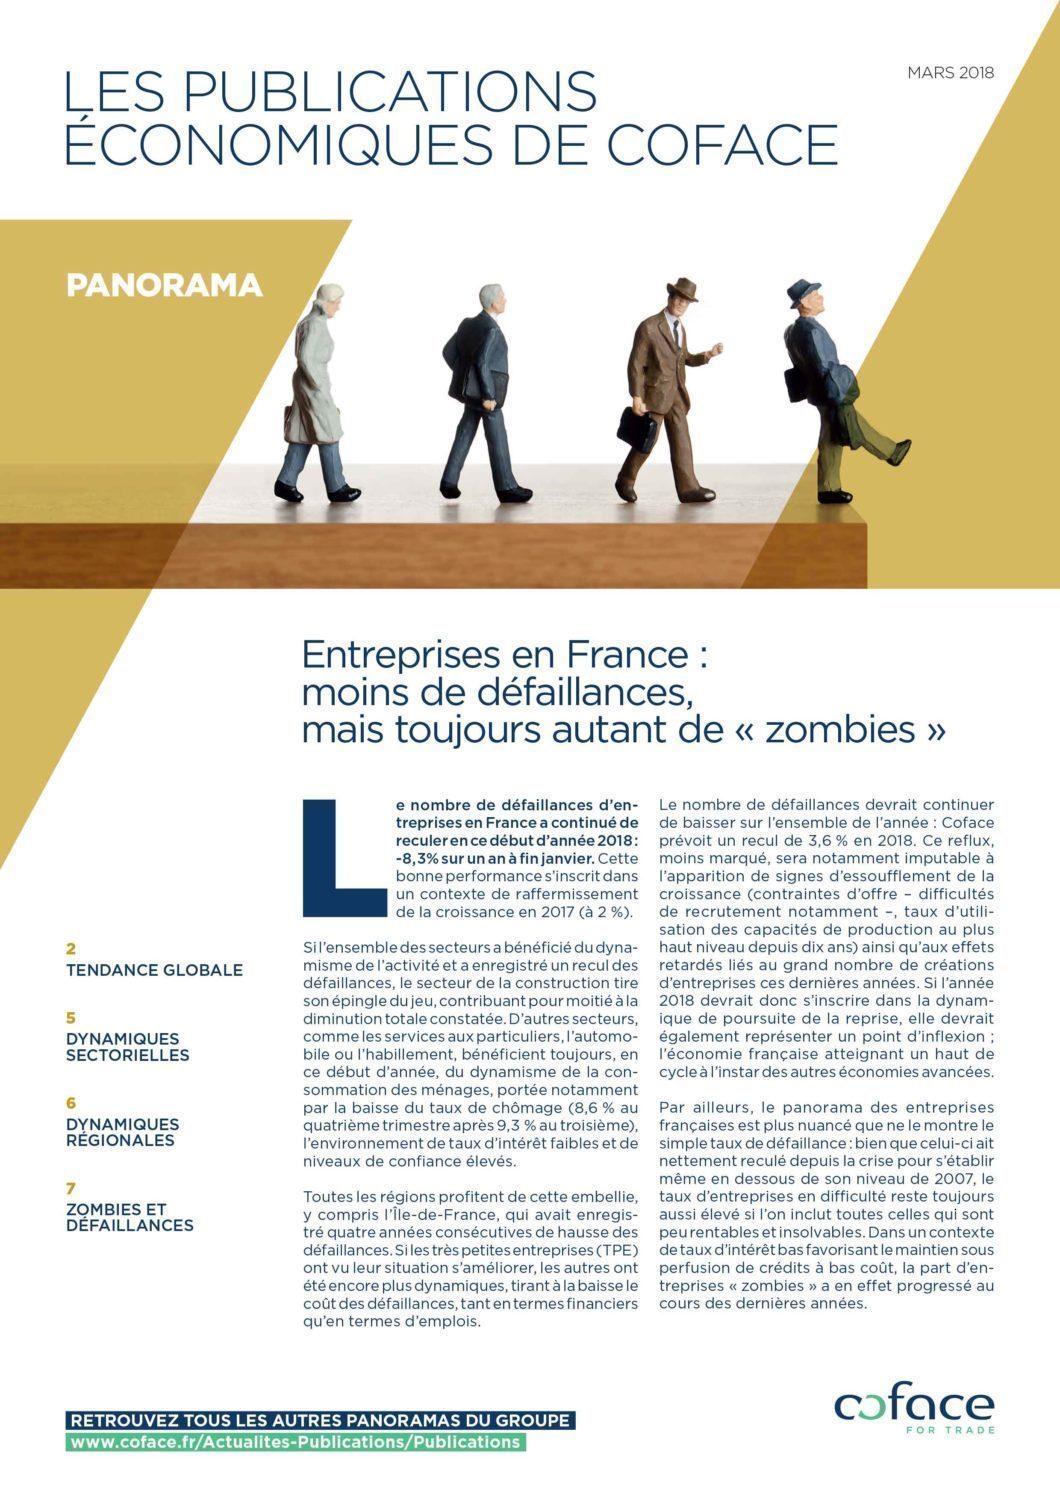 Entreprises en France : moins de défaillances, mais toujours autant de "zombies"